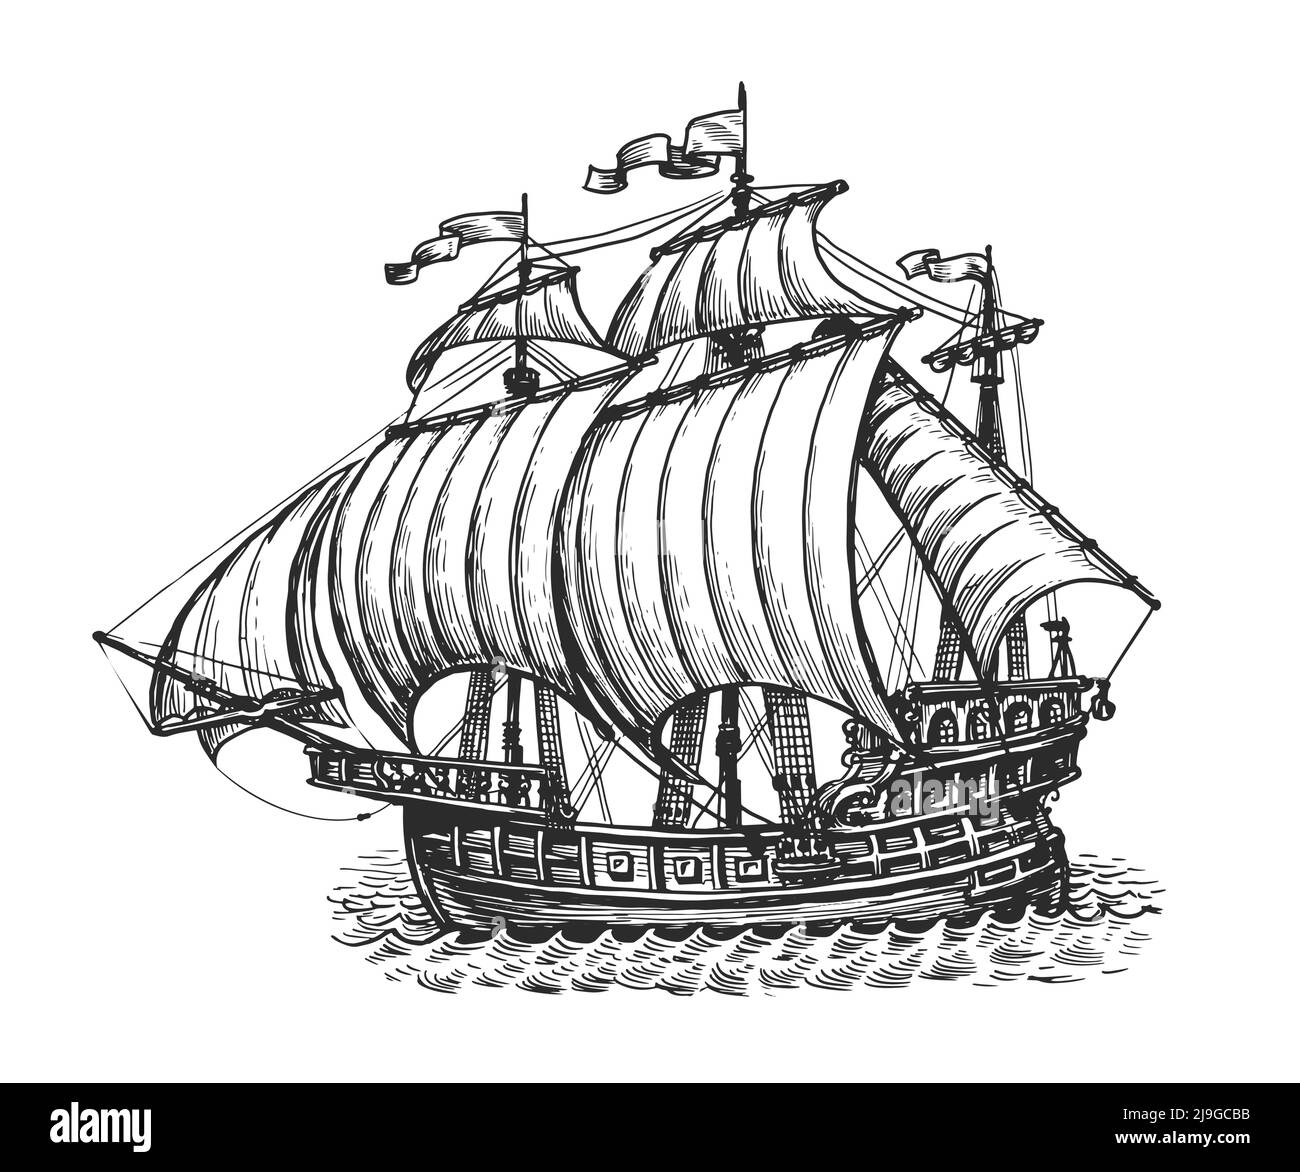 Boceto de barco antiguo. Concepto náutico. Ilustración vectorial dibujada a mano en estilo de grabado vintage Ilustración del Vector